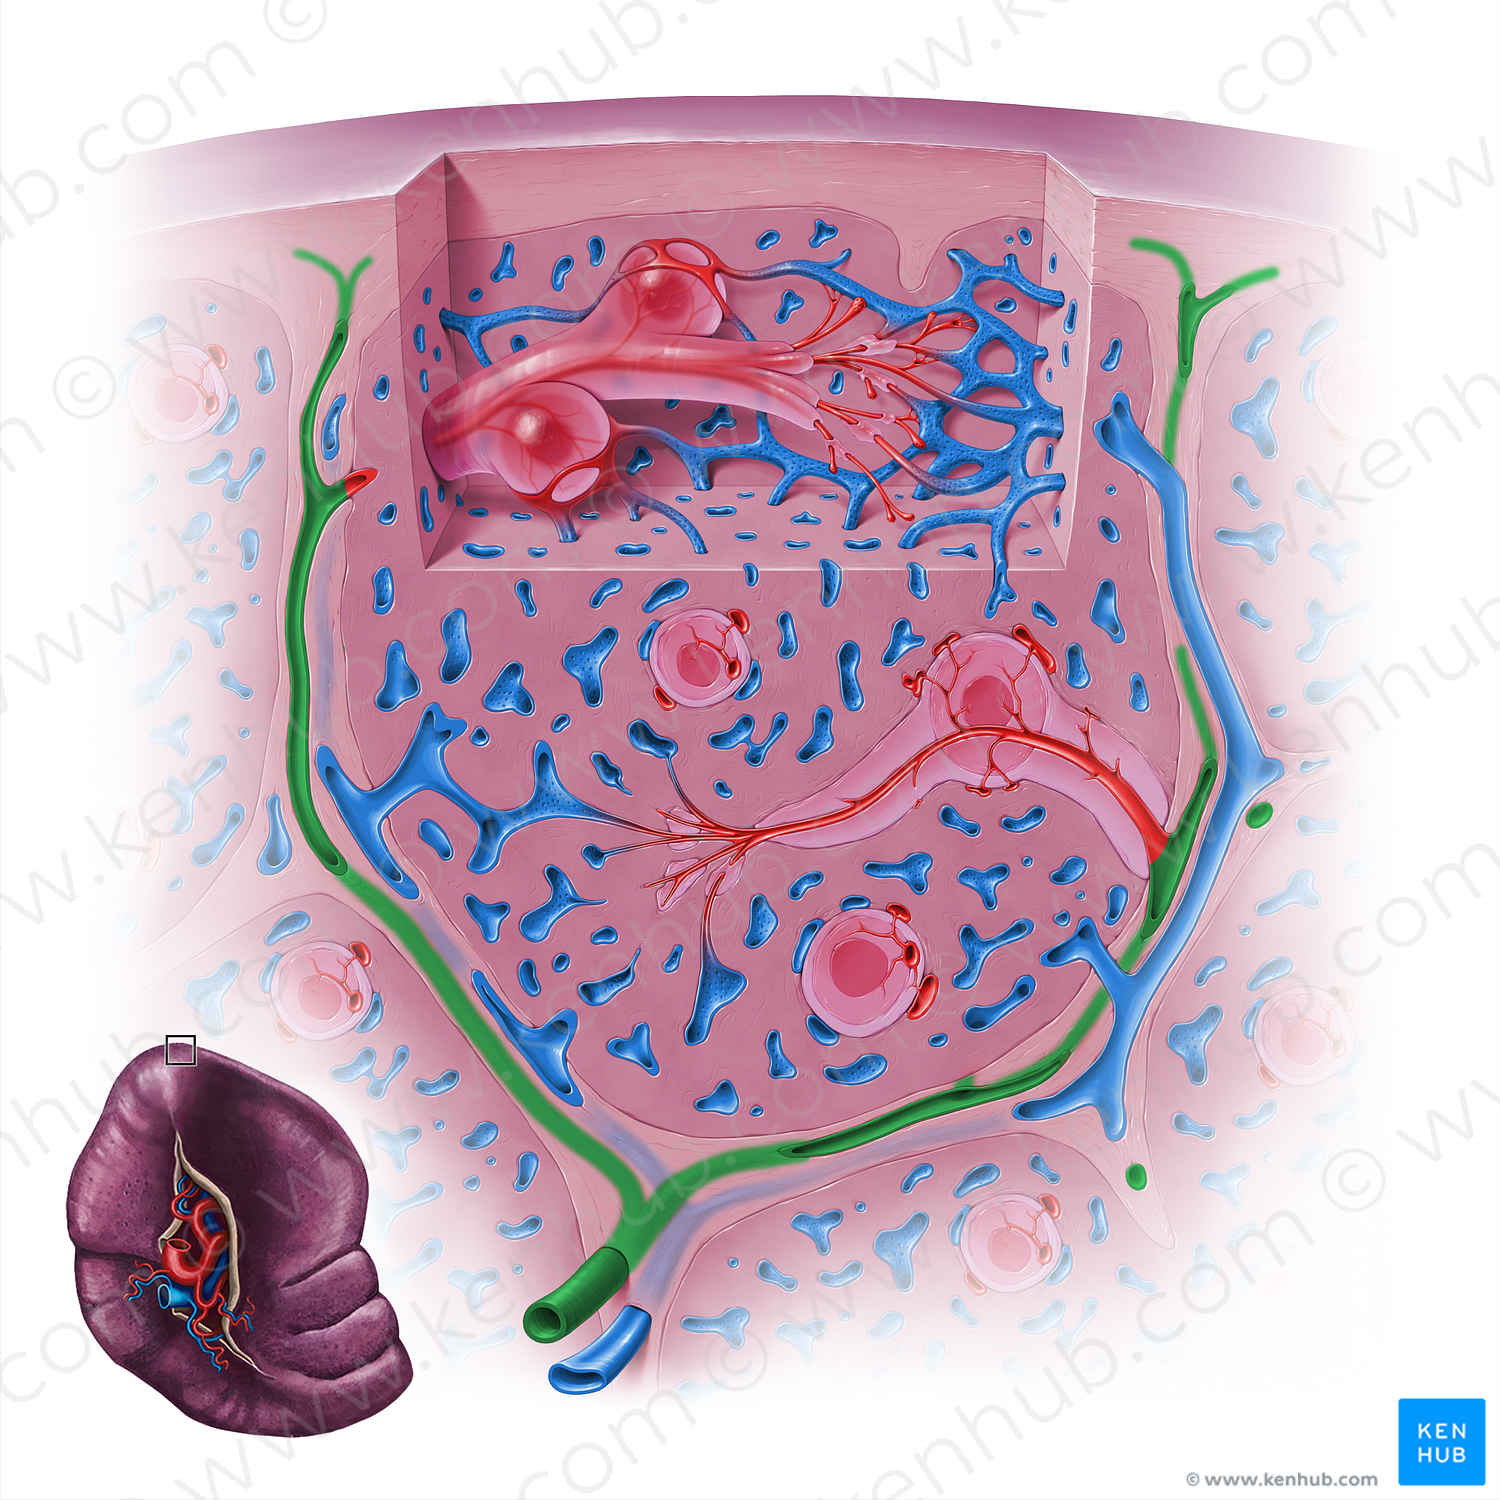 Trabecular artery of spleen (#18146)